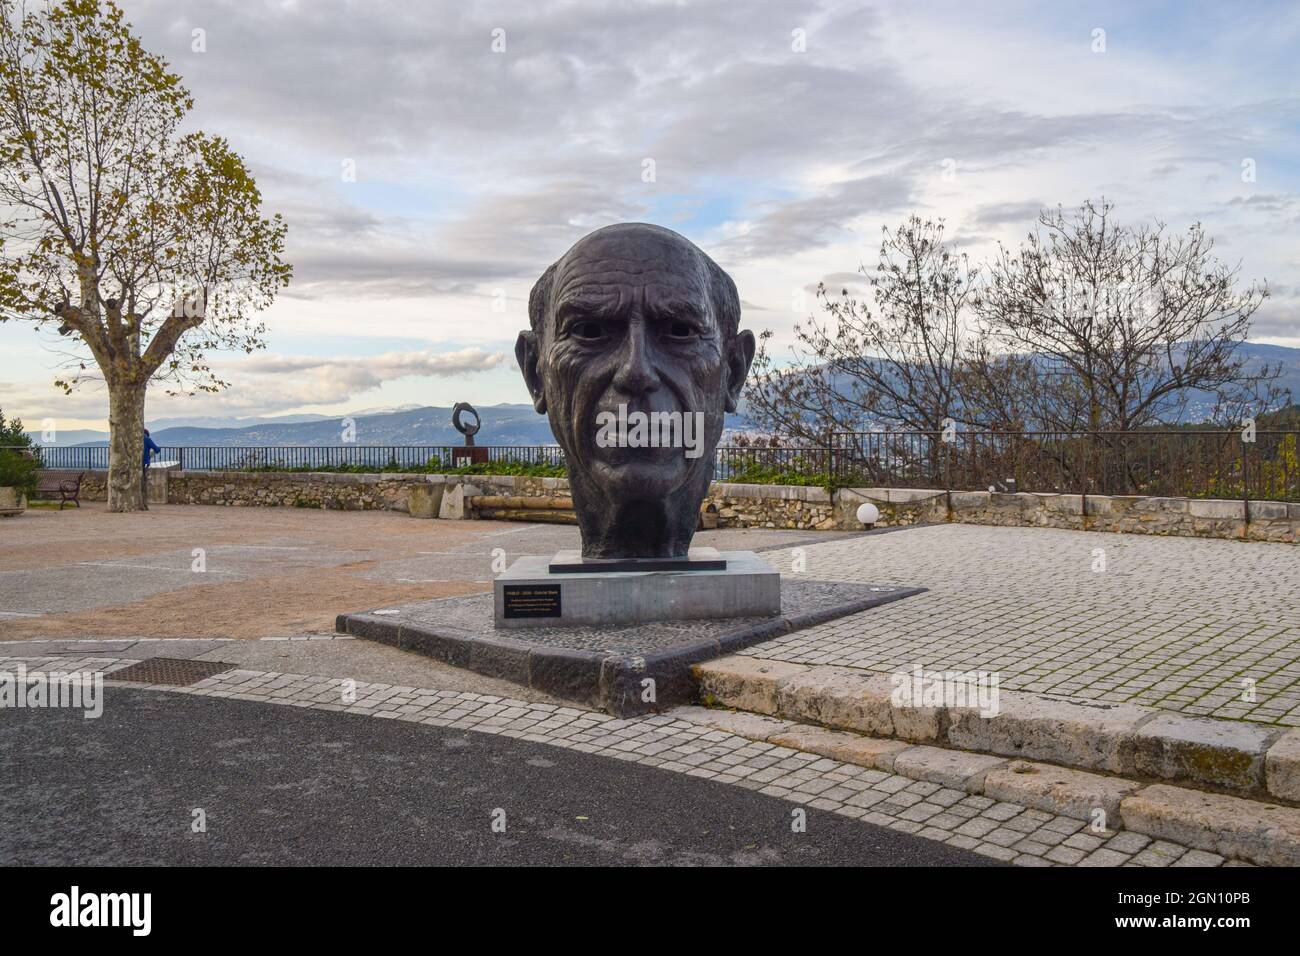 Statue de Pablo Picasso par Gabriël Sterk, Mougins, Sud de la France. Banque D'Images